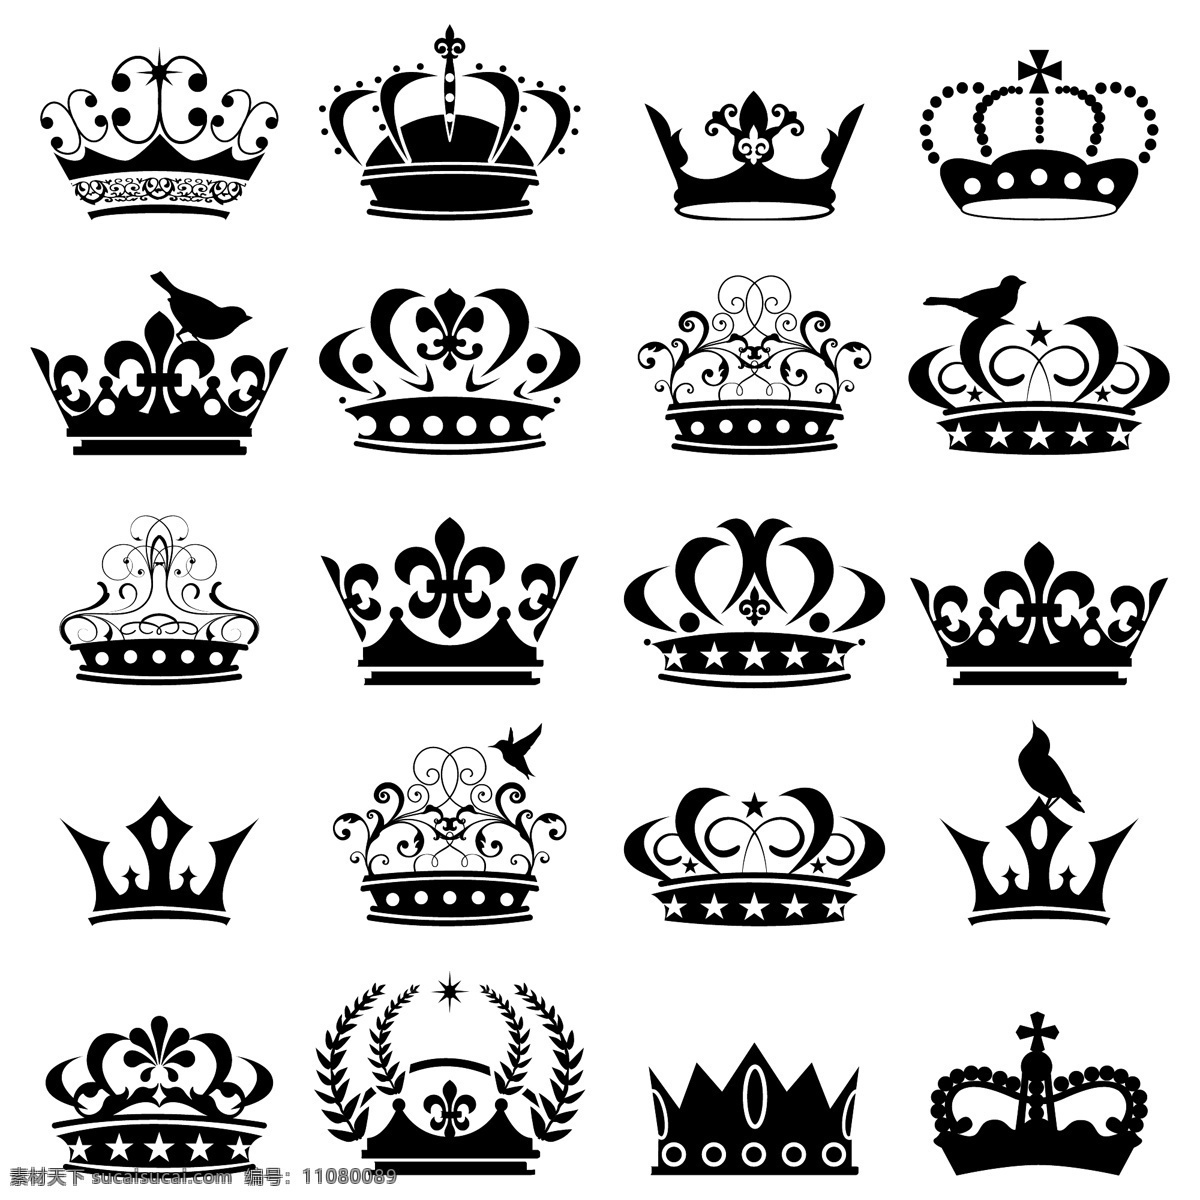 皇冠矢量素材 皇冠 矢量 黑色 豪华 矢量文件 底纹边框 其他素材